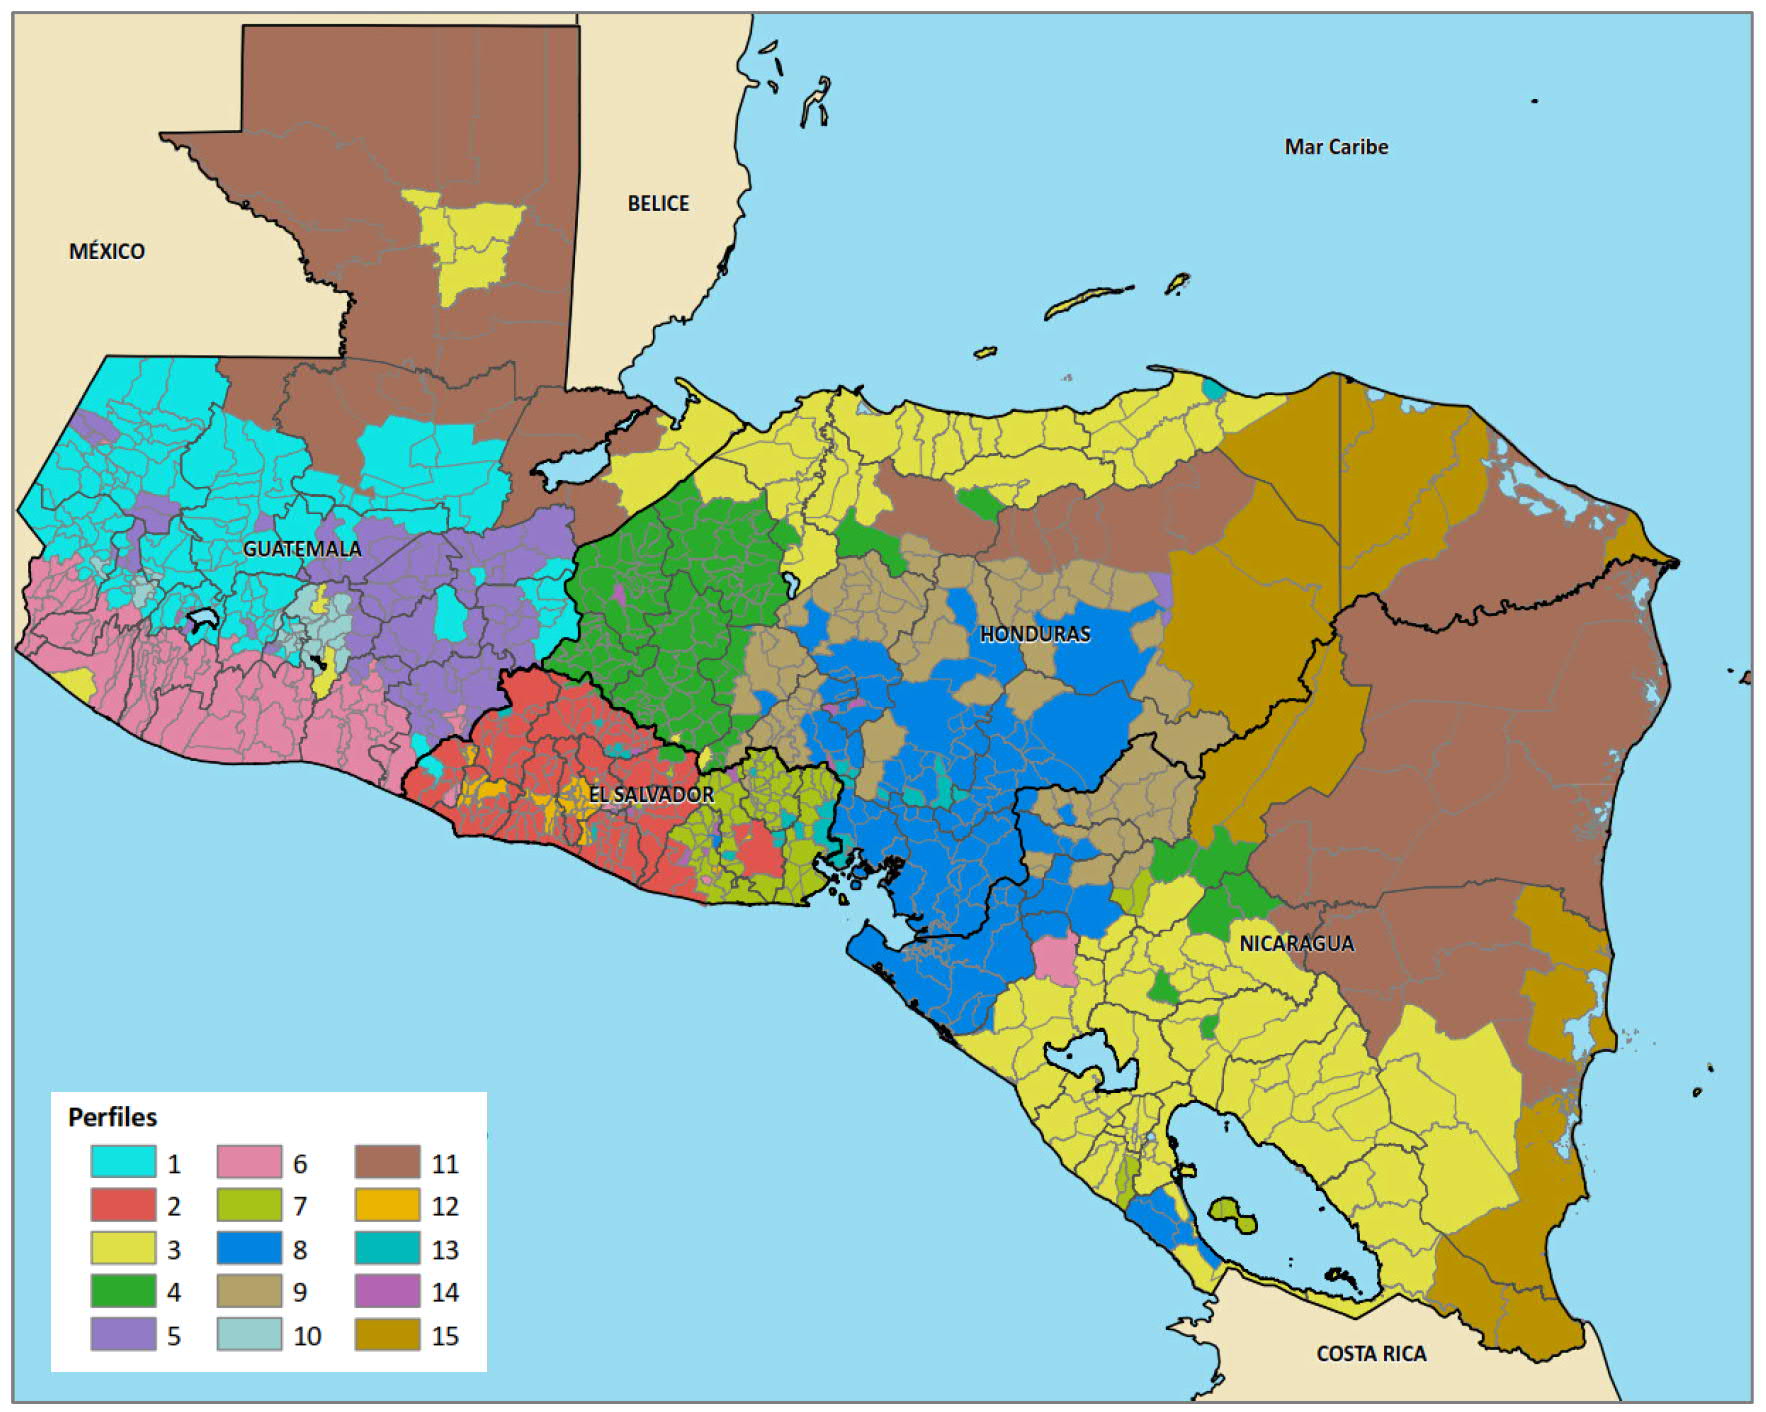 Mapa de Centroamérica que refleja las zonas de preocupación por perfiles en el que cada perfil presenta unas características sociodemográficas diferentes que lo hacen diferente a los demás